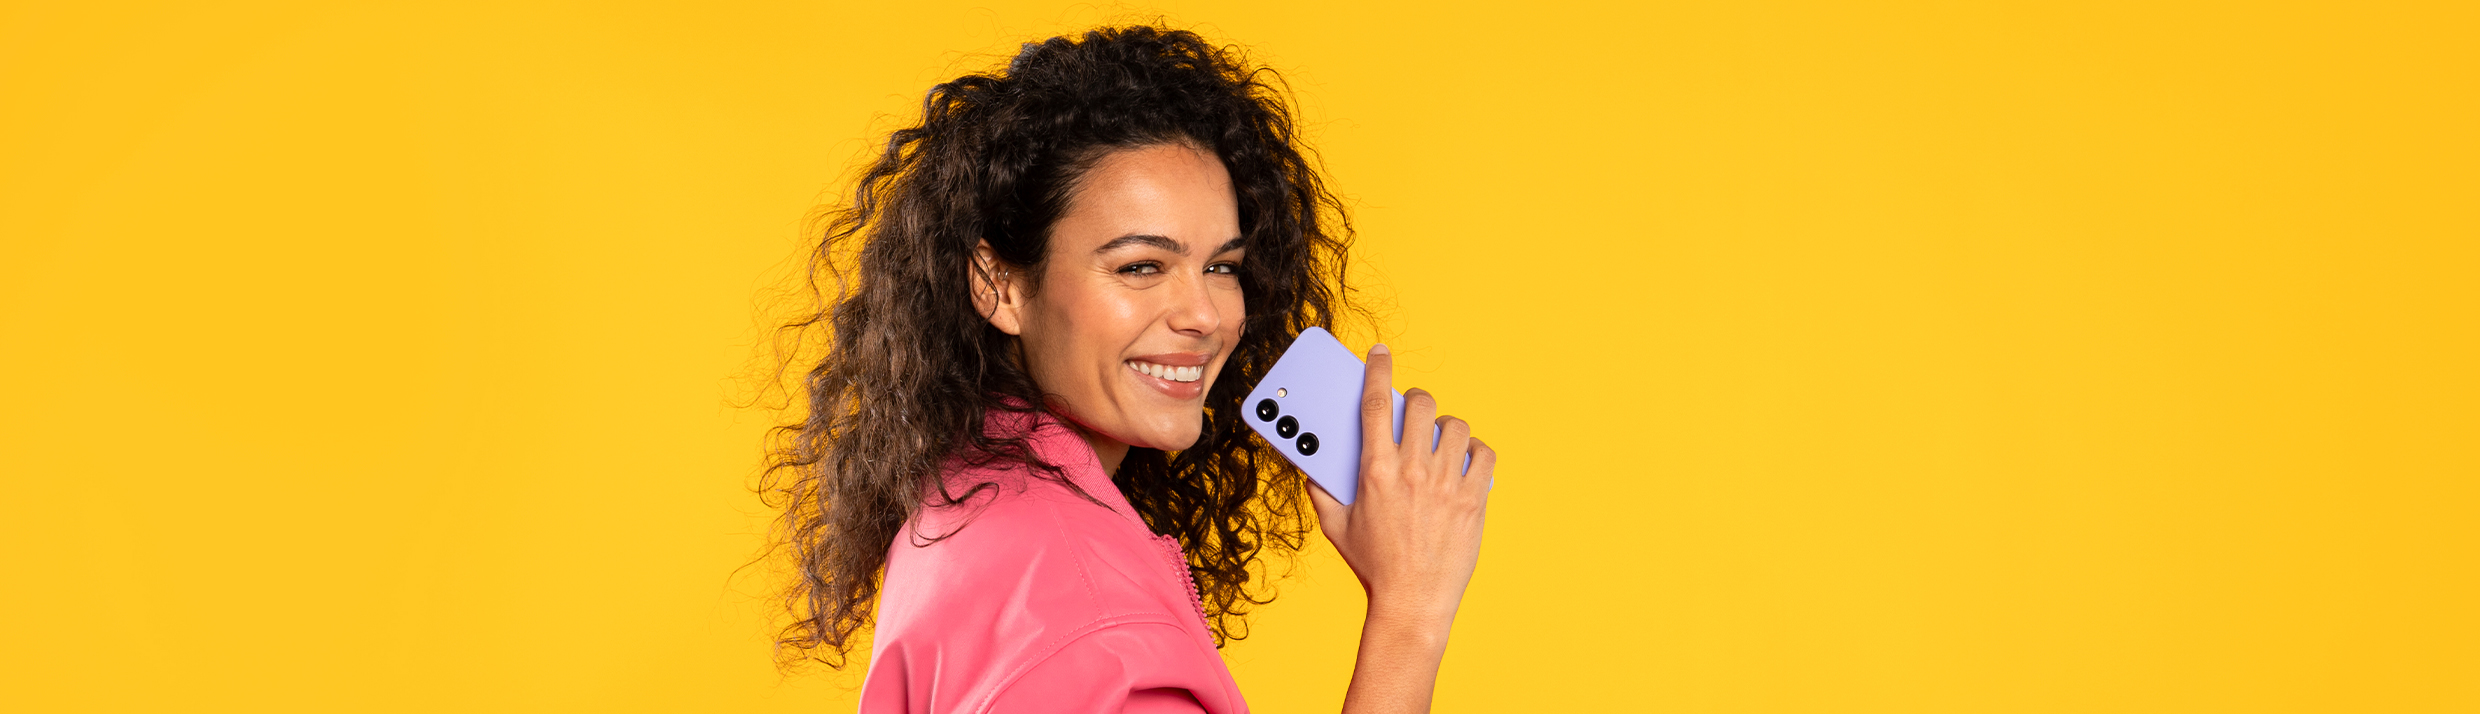 Eine Frau hält lachend eine lila Handyhülle, der Hintergrund ist gelb.